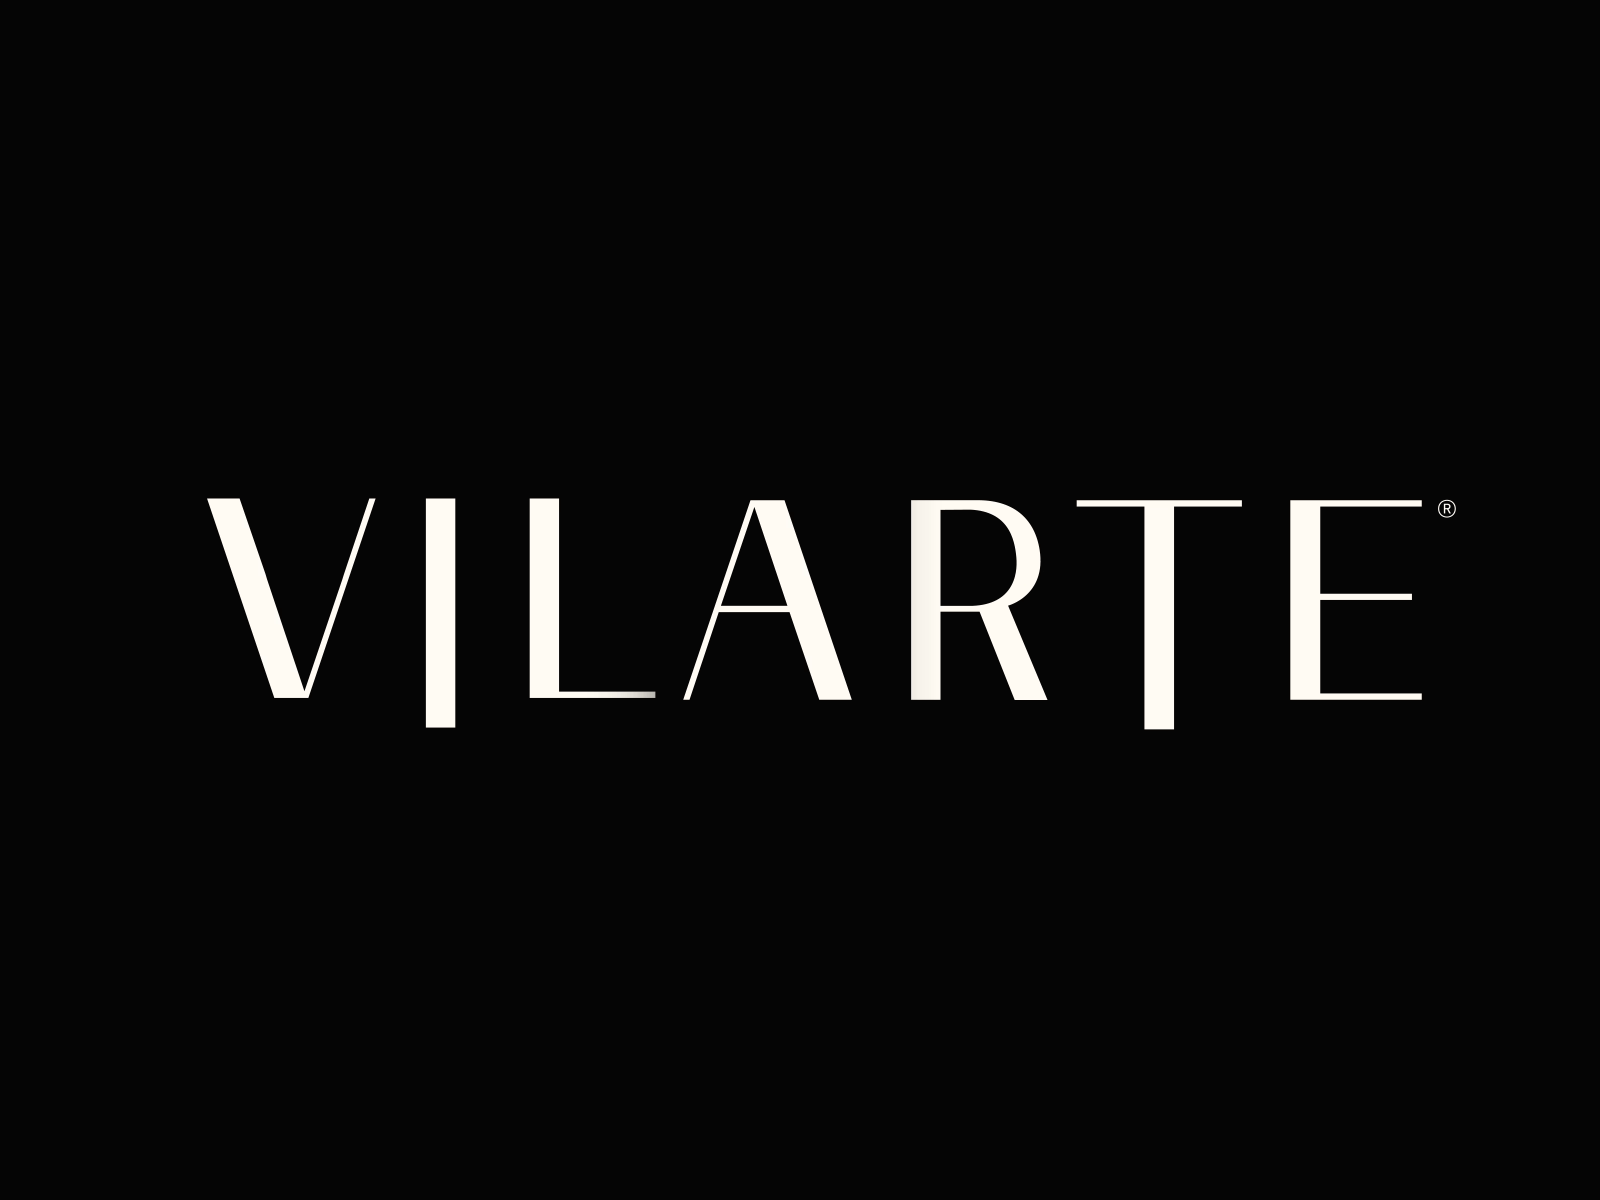 Vilarte logo loop